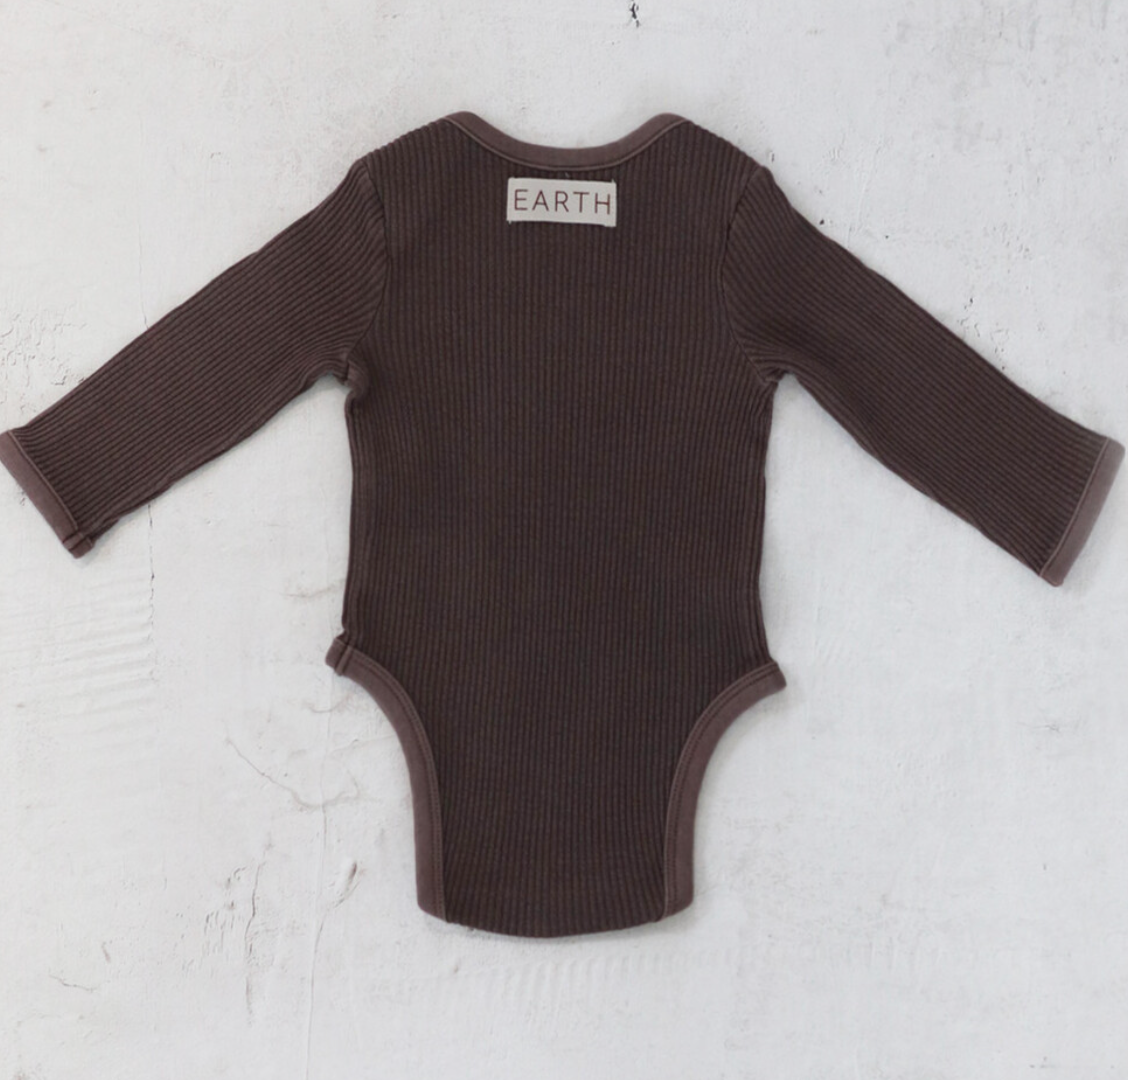 Longsleeve baby suit_Brown(Last.1)